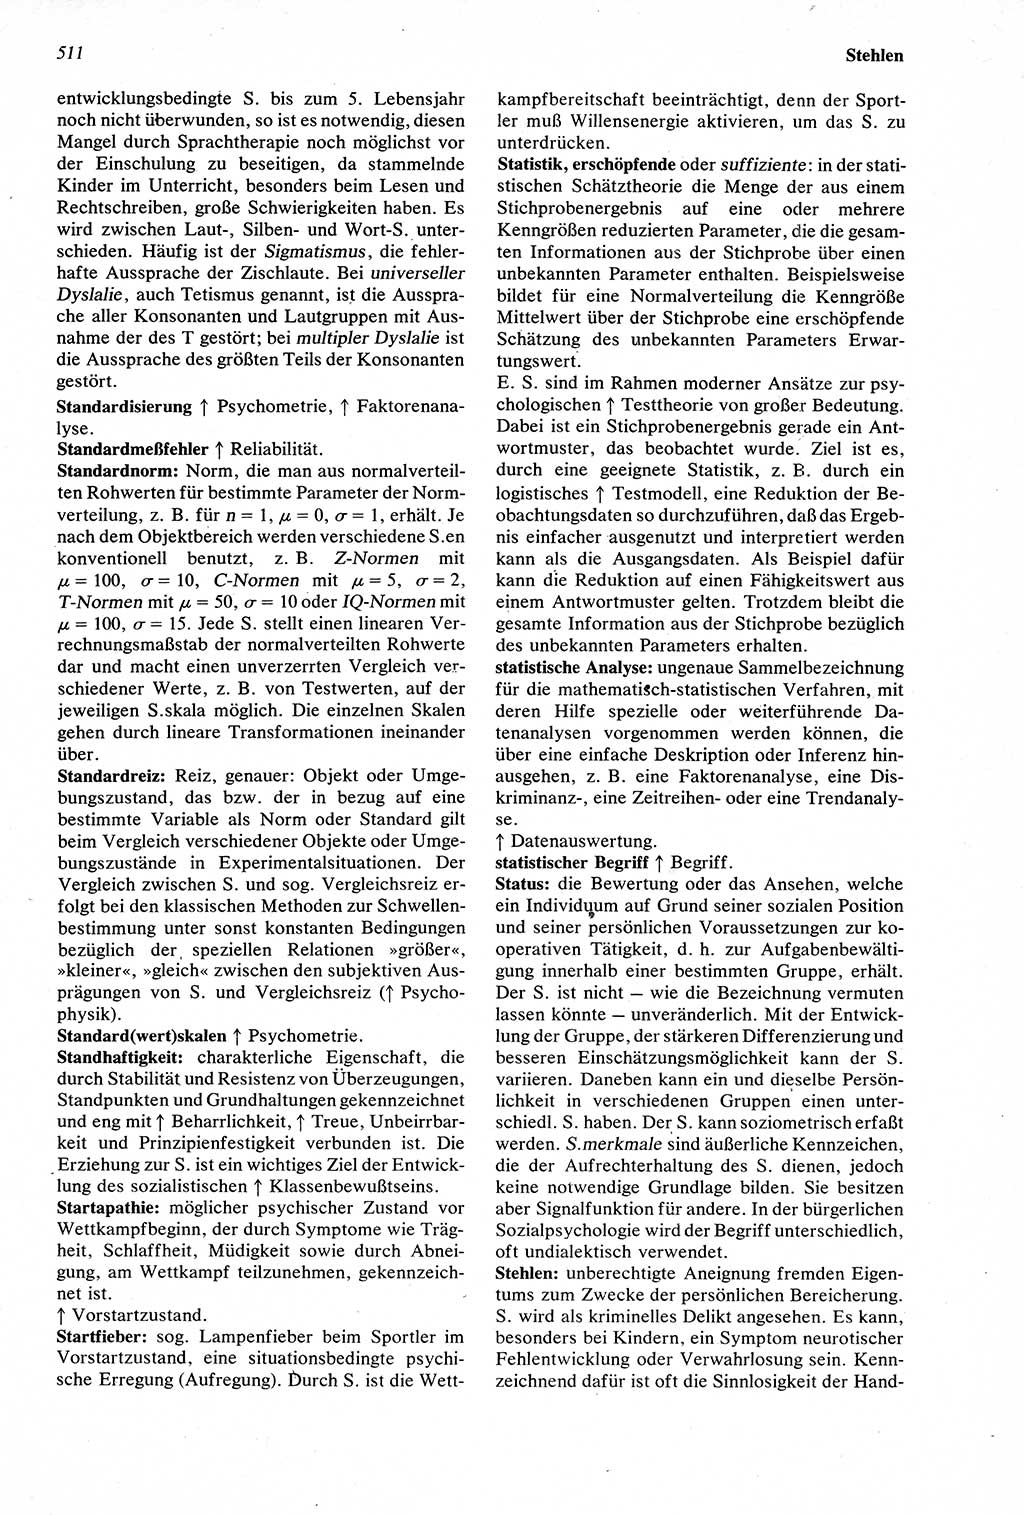 Wörterbuch der Psychologie [Deutsche Demokratische Republik (DDR)] 1976, Seite 511 (Wb. Psych. DDR 1976, S. 511)